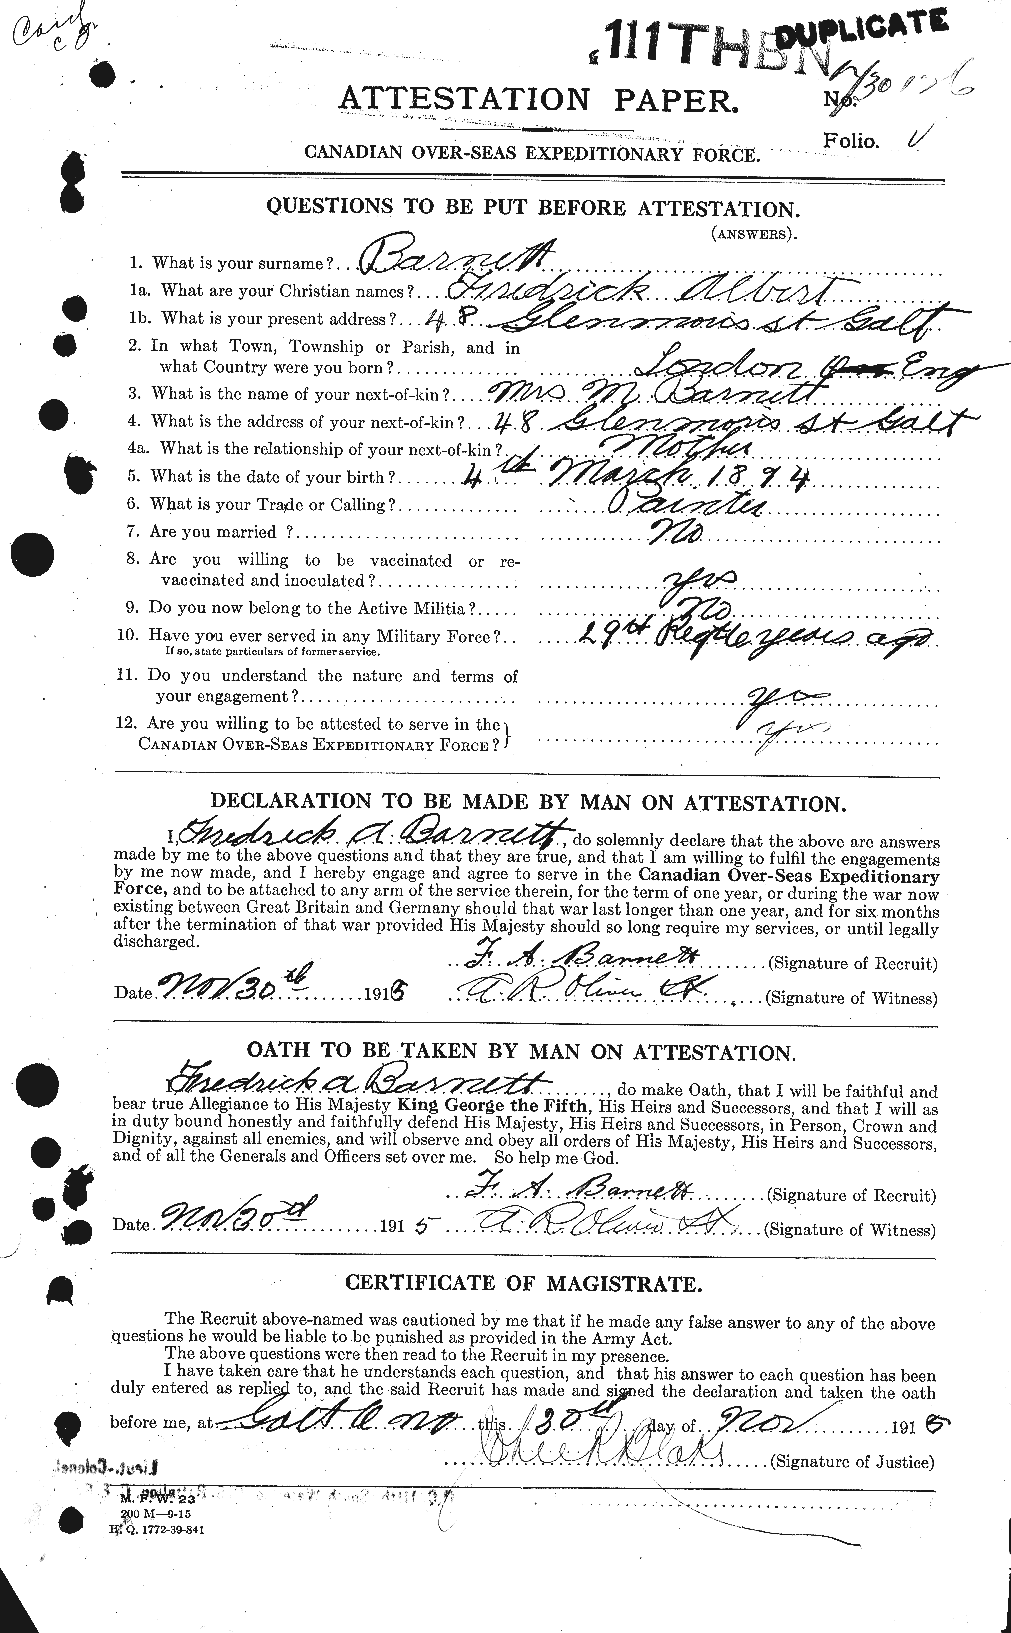 Dossiers du Personnel de la Première Guerre mondiale - CEC 222973a